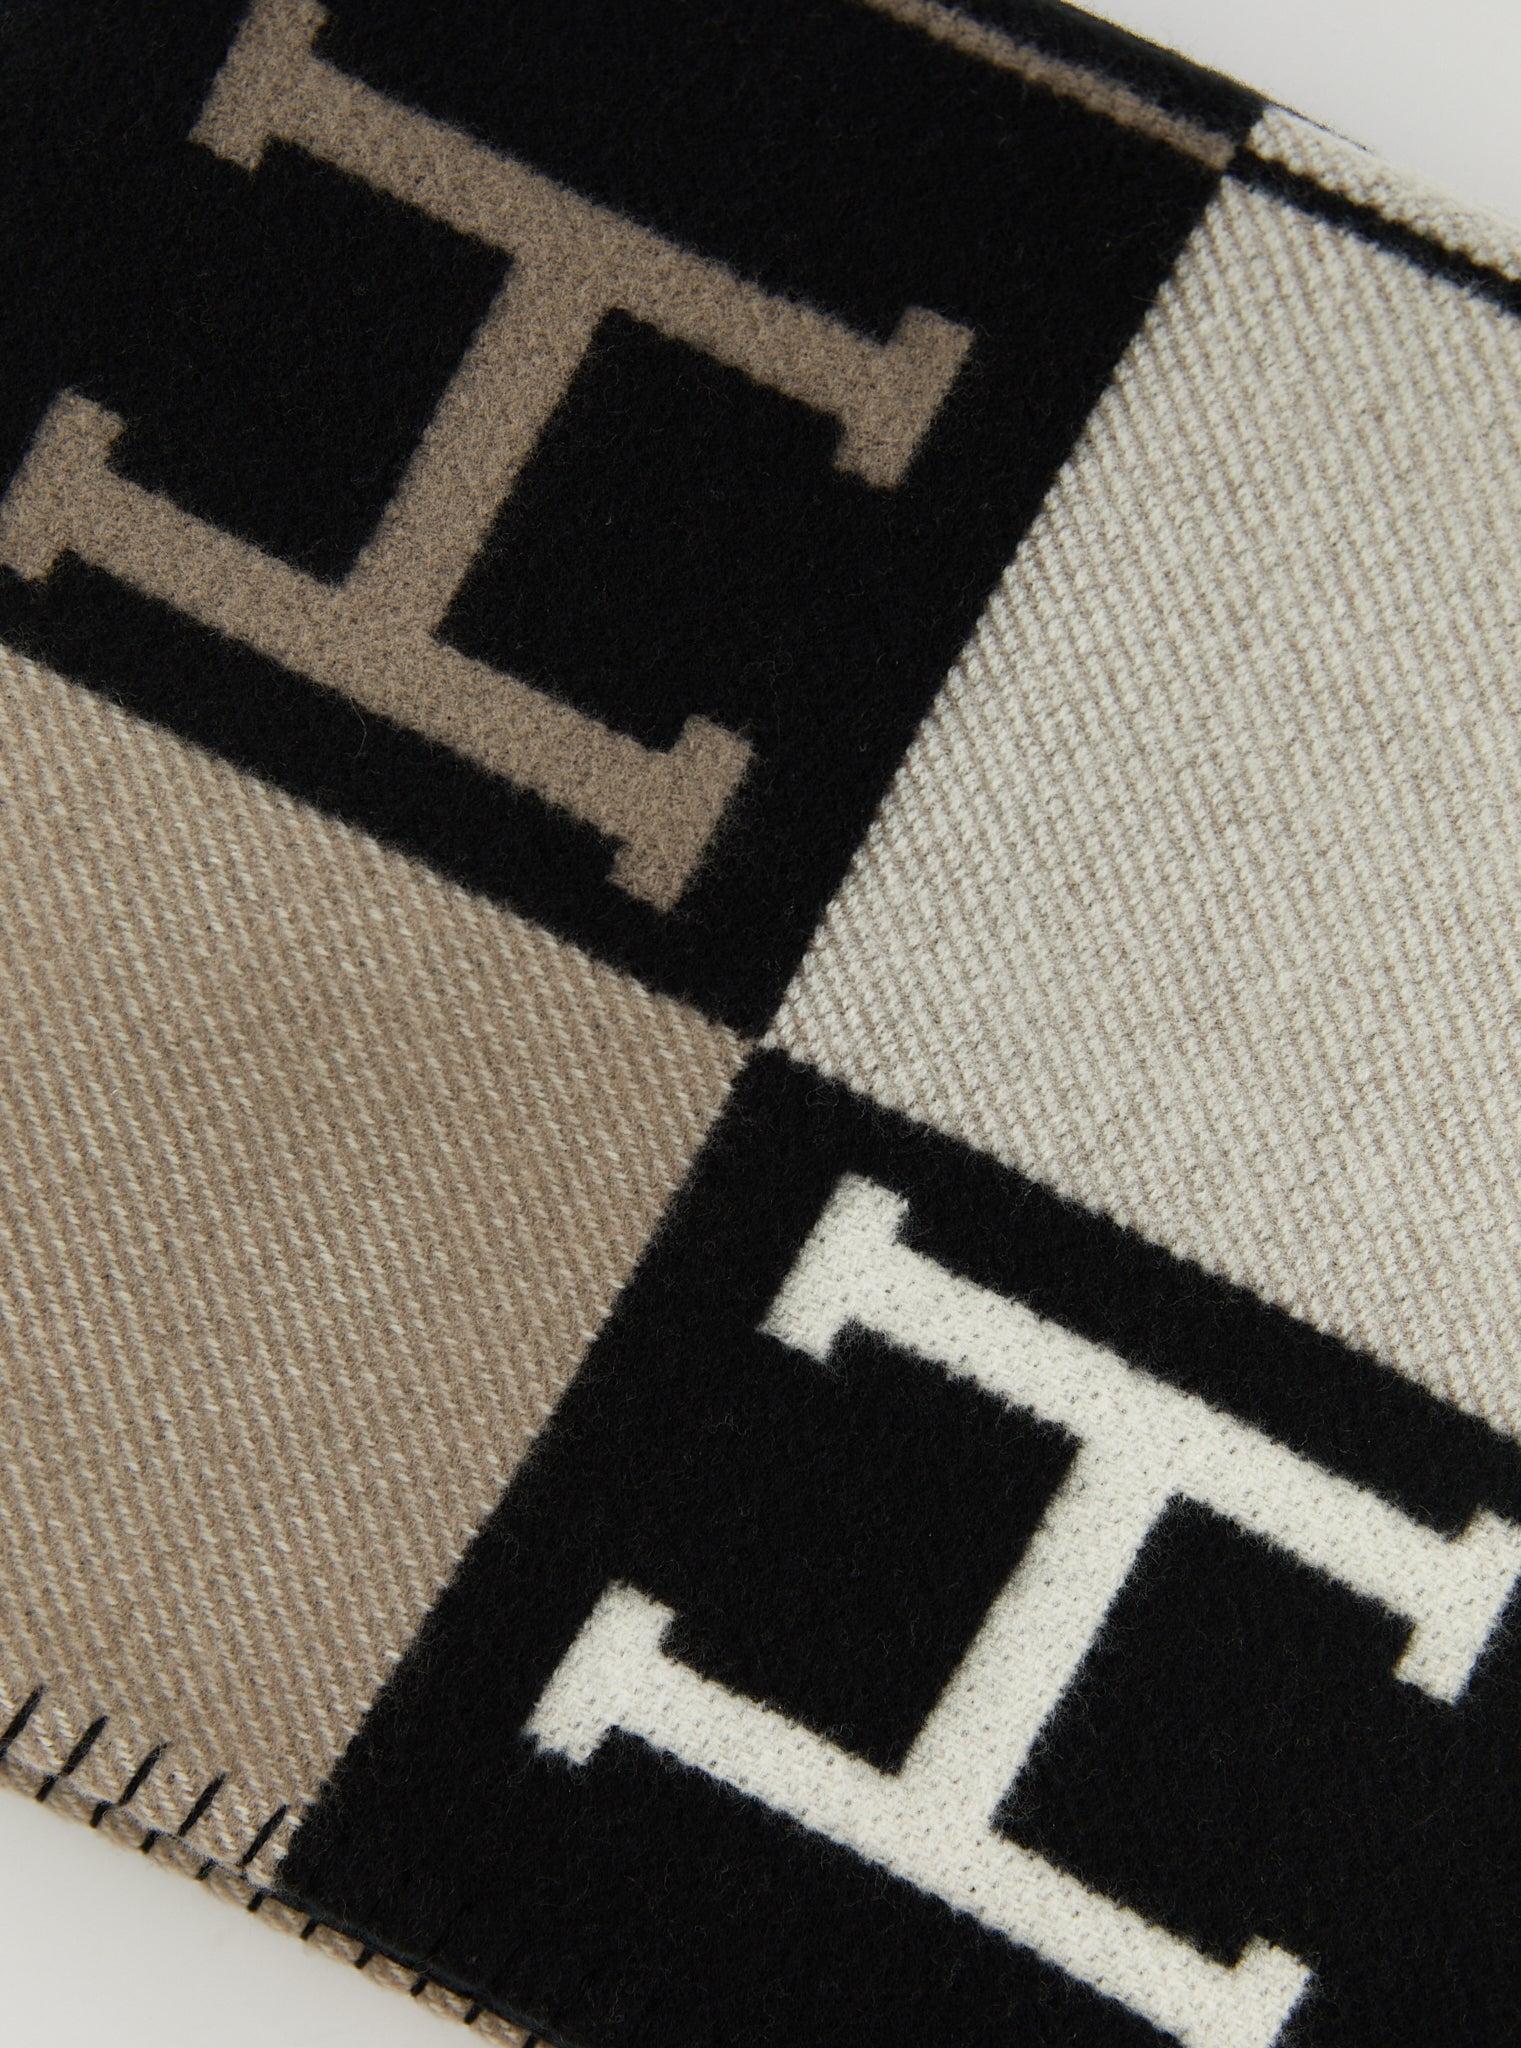 Plaid Avalon III d'Hermès en écru et noir

Plaid en laine mérinos et cachemire (90% laine mérinos, 10% cachemire)

Fabriqué en Grande-Bretagne

Dimensions : L 135 x H 170 cm